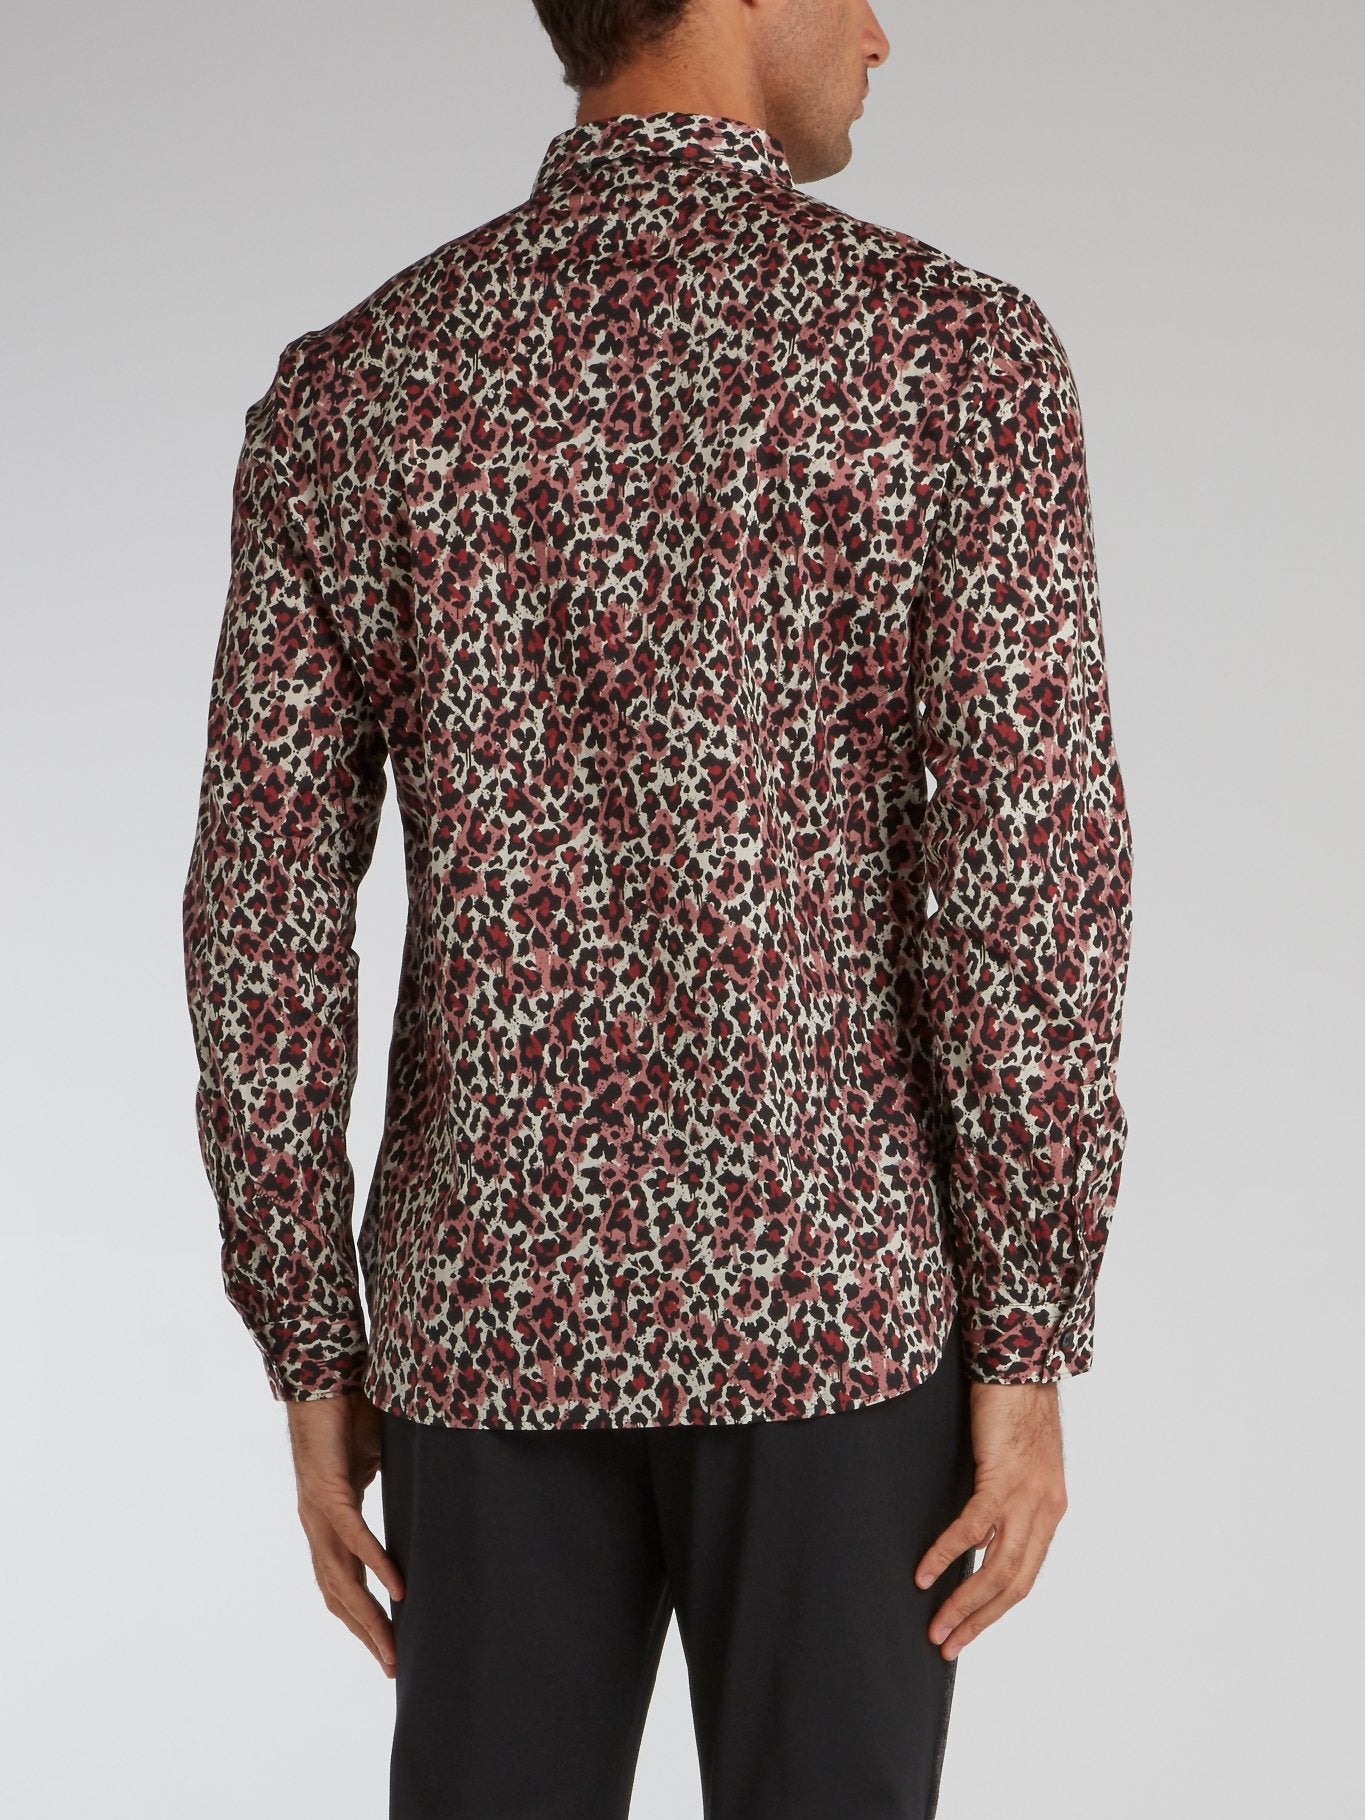 Leopard Print Button Up Shirt